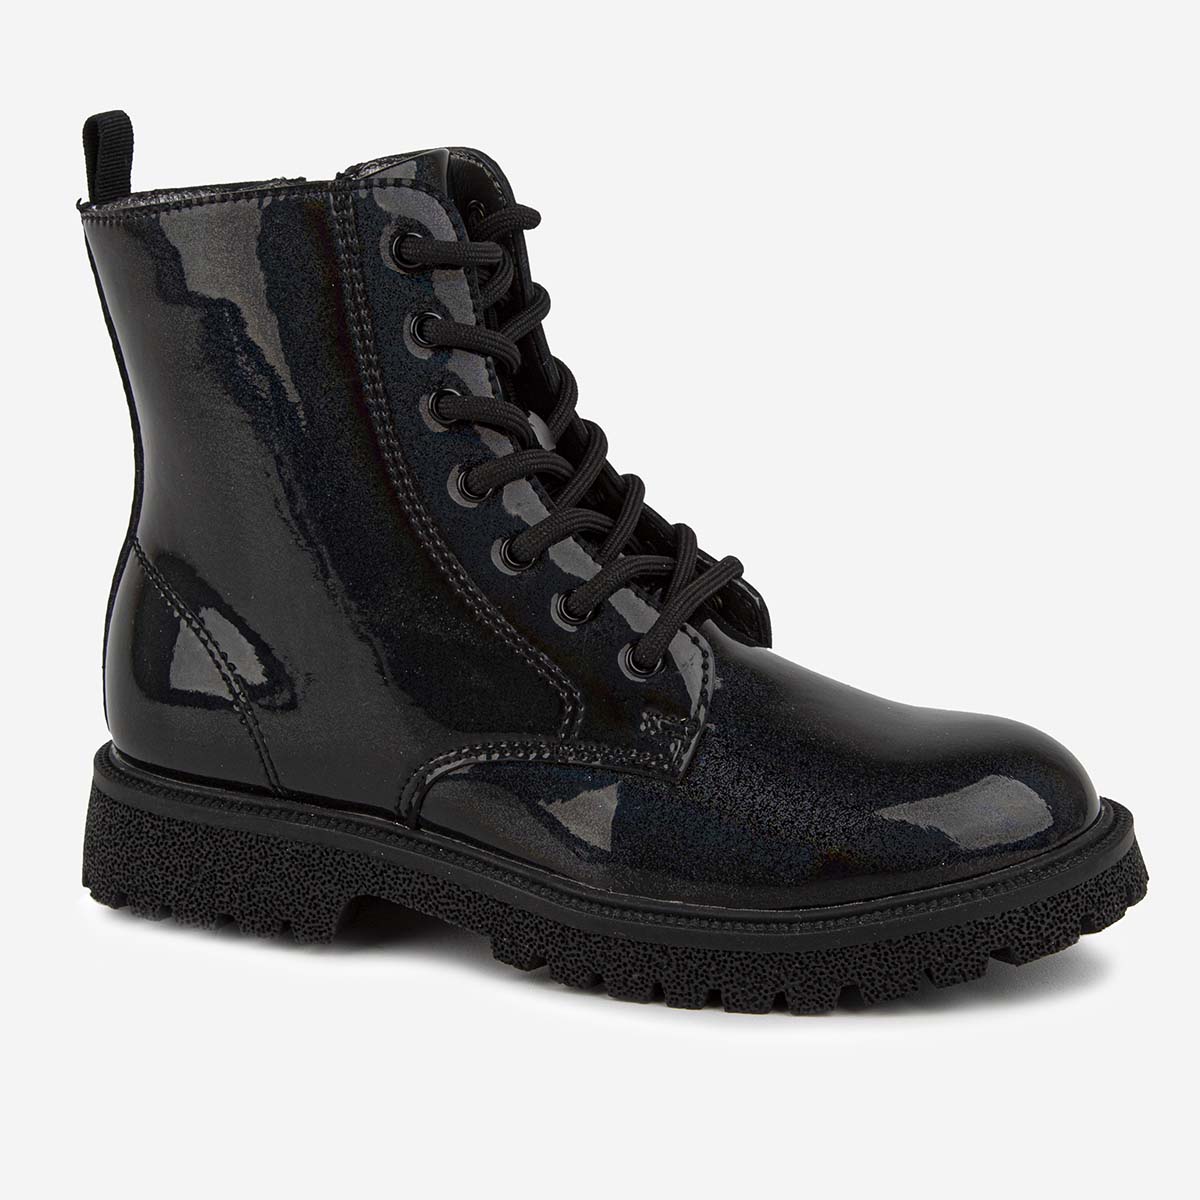 Ботинки Kapika 52556ук, цвет черный, размер 31